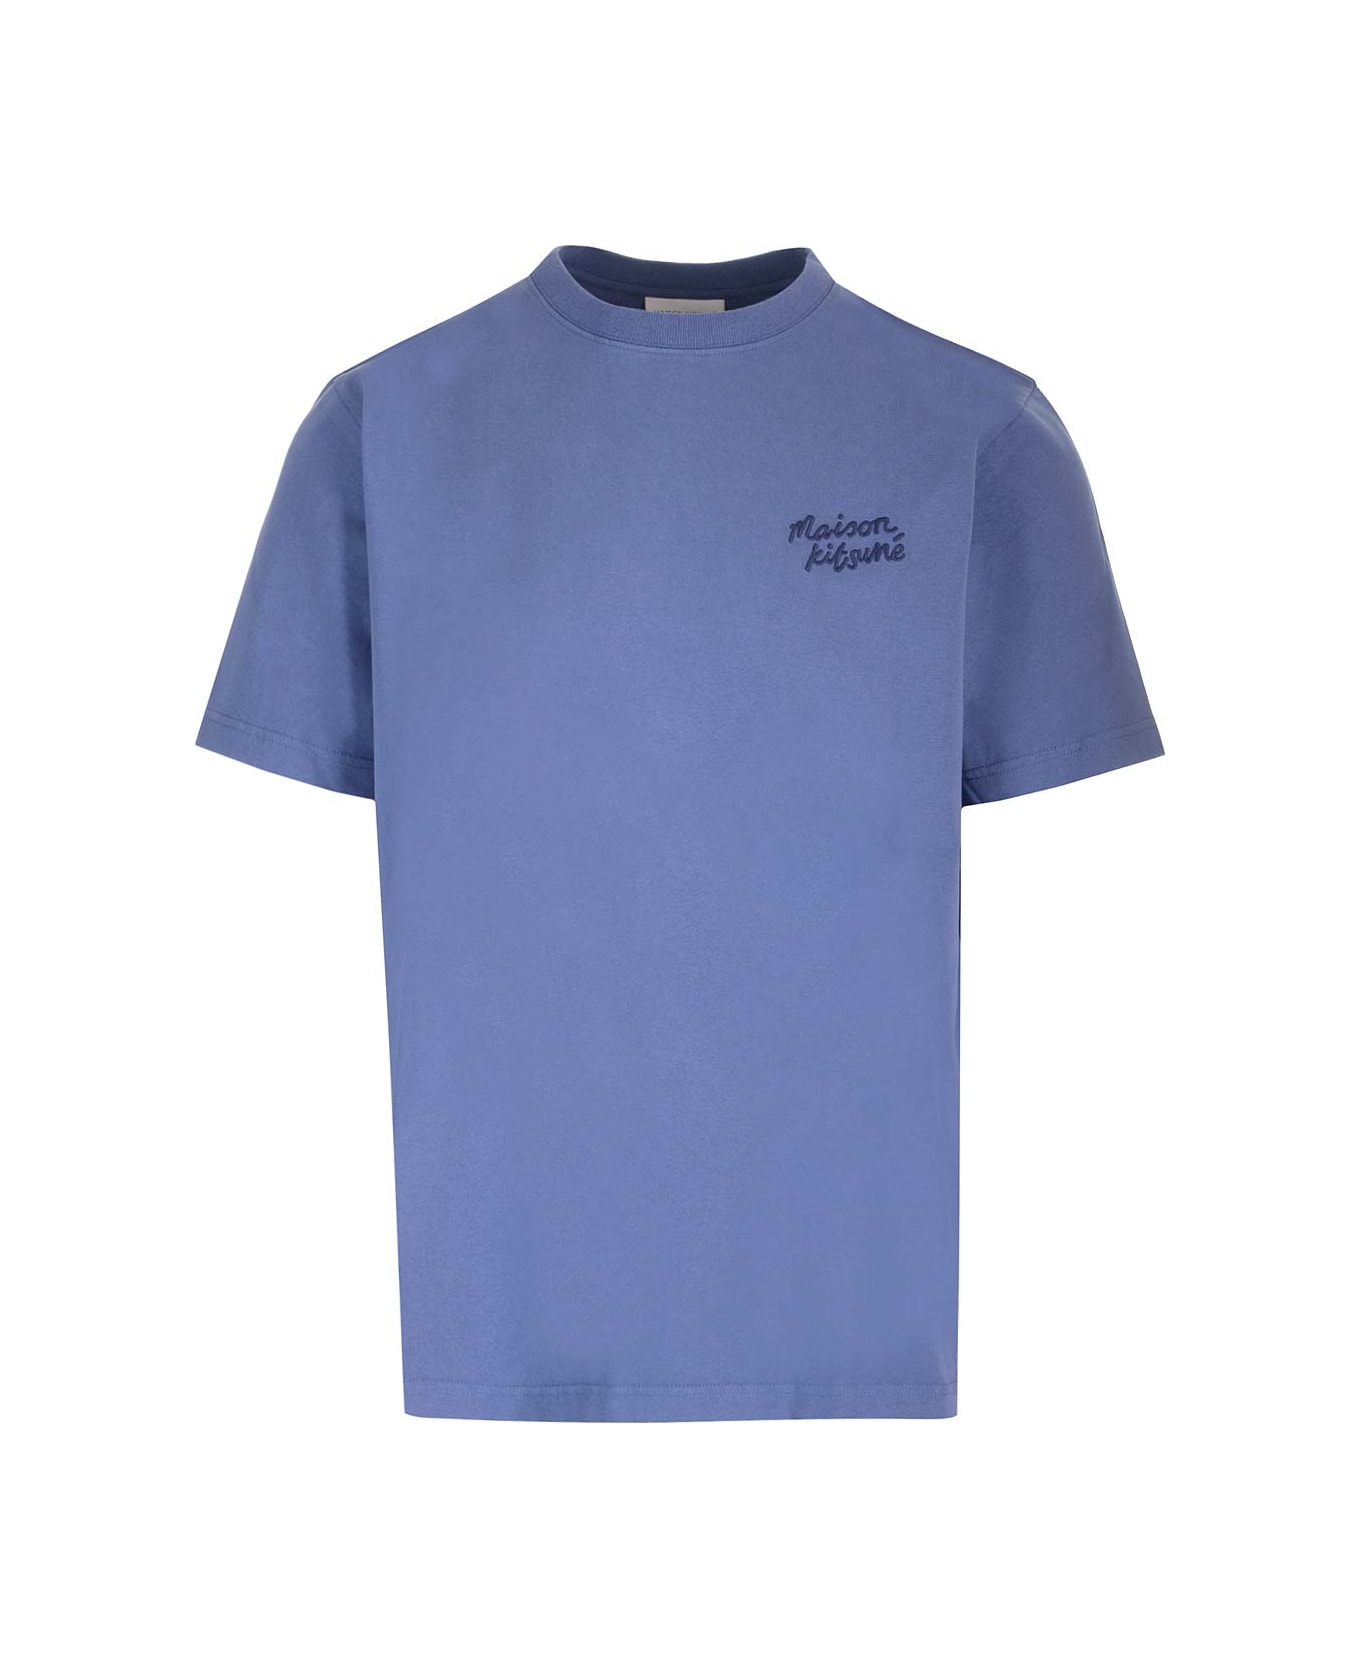 Maison Kitsuné Blue Crewneck T-shirt - Storm Blue